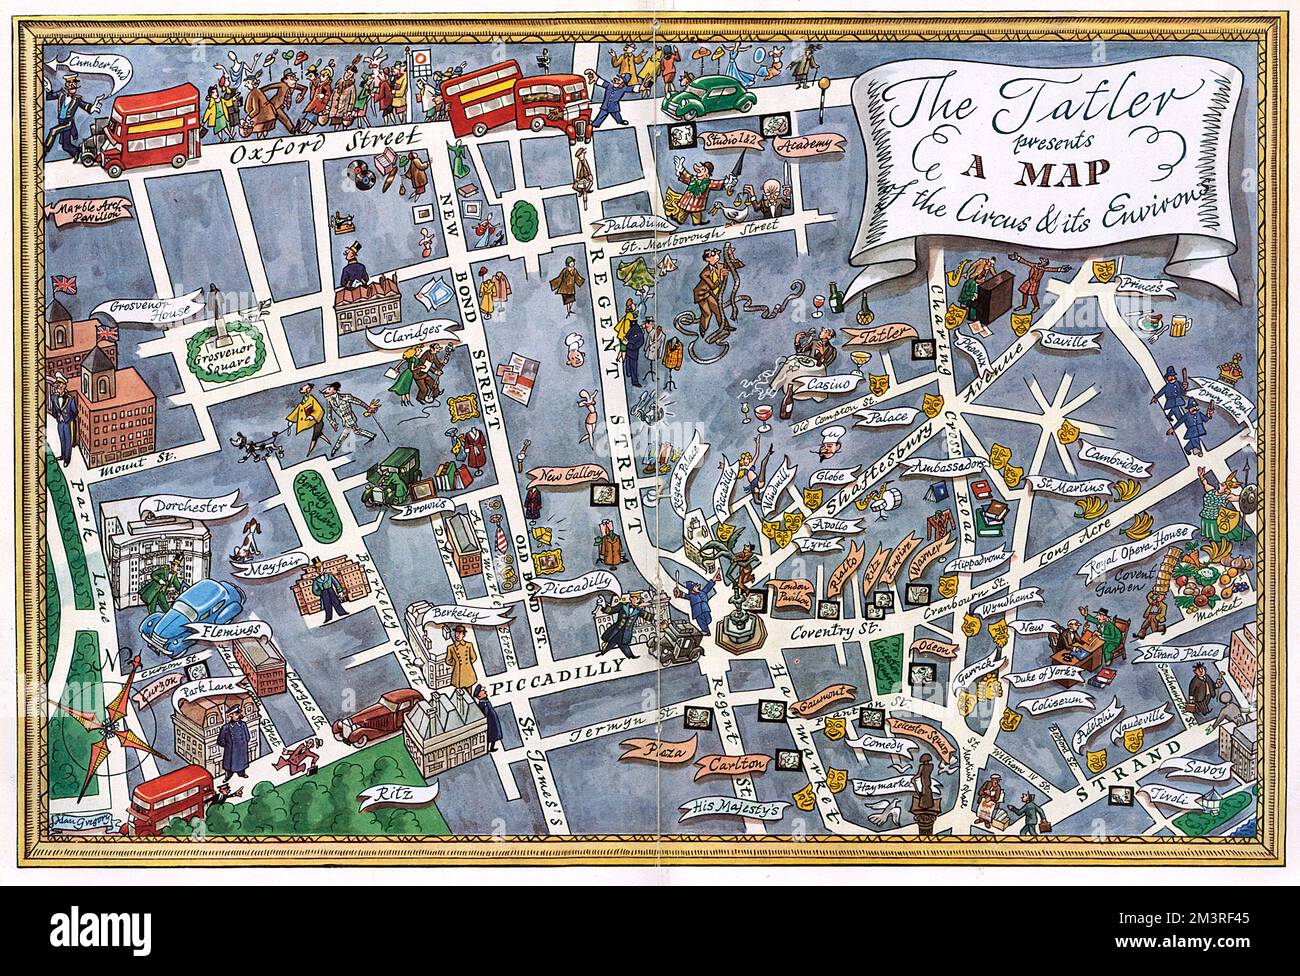 Una mappa del West End di Londra con Piccadilly Circus al suo centro. Famosi teatri, locali notturni, cinema e hotel sono contrassegnati da etichette decorative e disegni simbolici. Data: 1950 Foto Stock